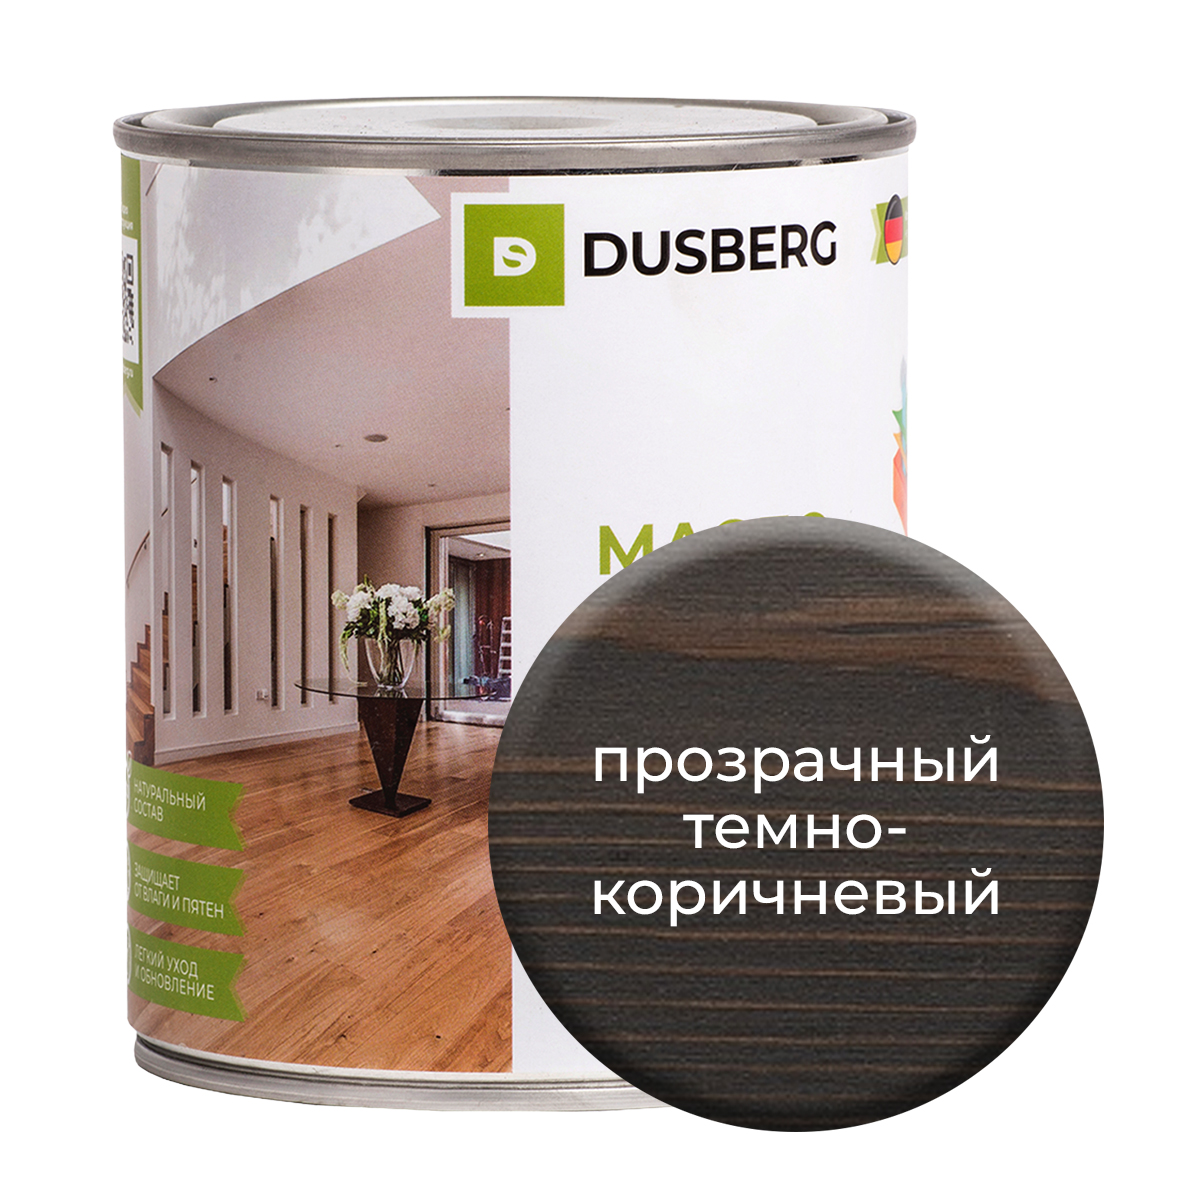 Масло Dusberg с твердым воском на бесцветной основе, 750 мл Прозрачный темно-коричневый масло dusberg для дерева на бесцветной основе 750 мл светло коричневый